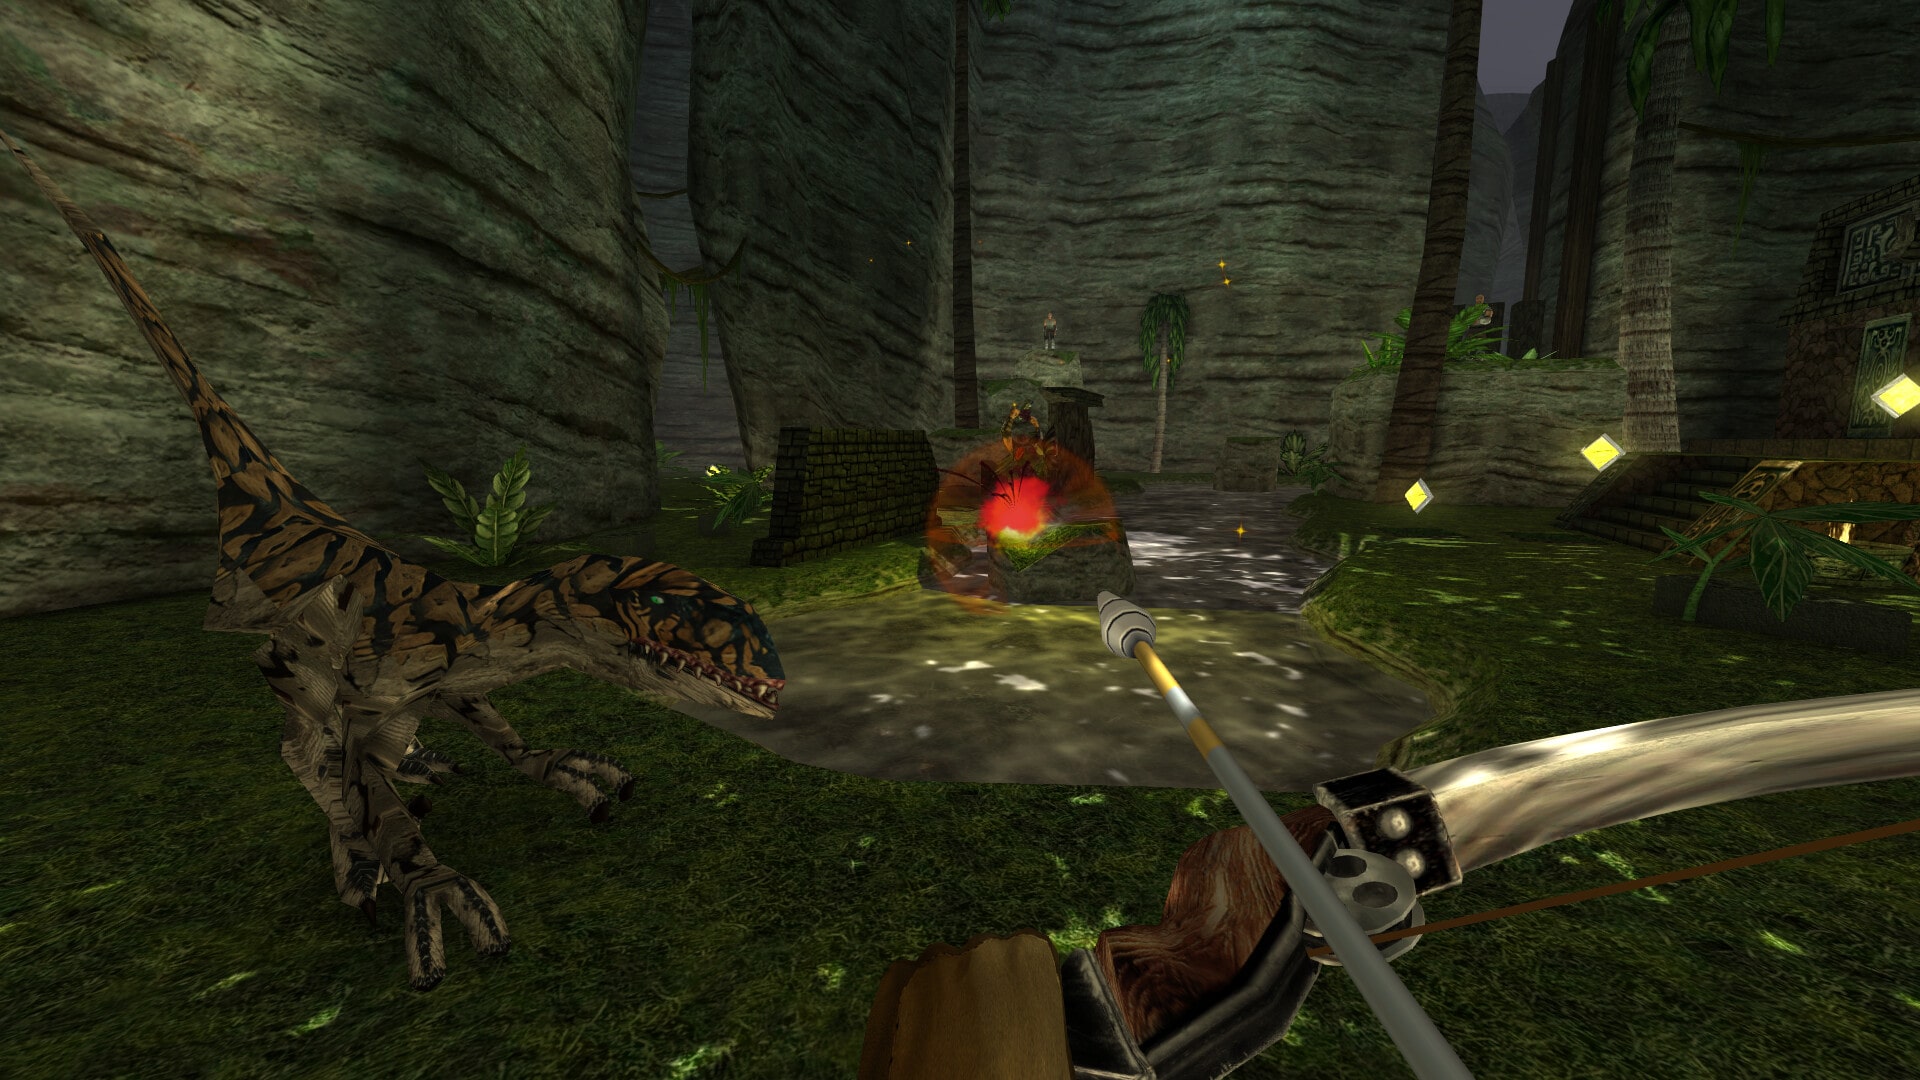 Screenshot aus Turok 3 Remastered. Zu sehen ist eine grünes Tal umgeben von steilen Felswenden. Der Spielcharakter hält einen Bogen, während ein Raptor Richtung Spielcharakter läuft. 